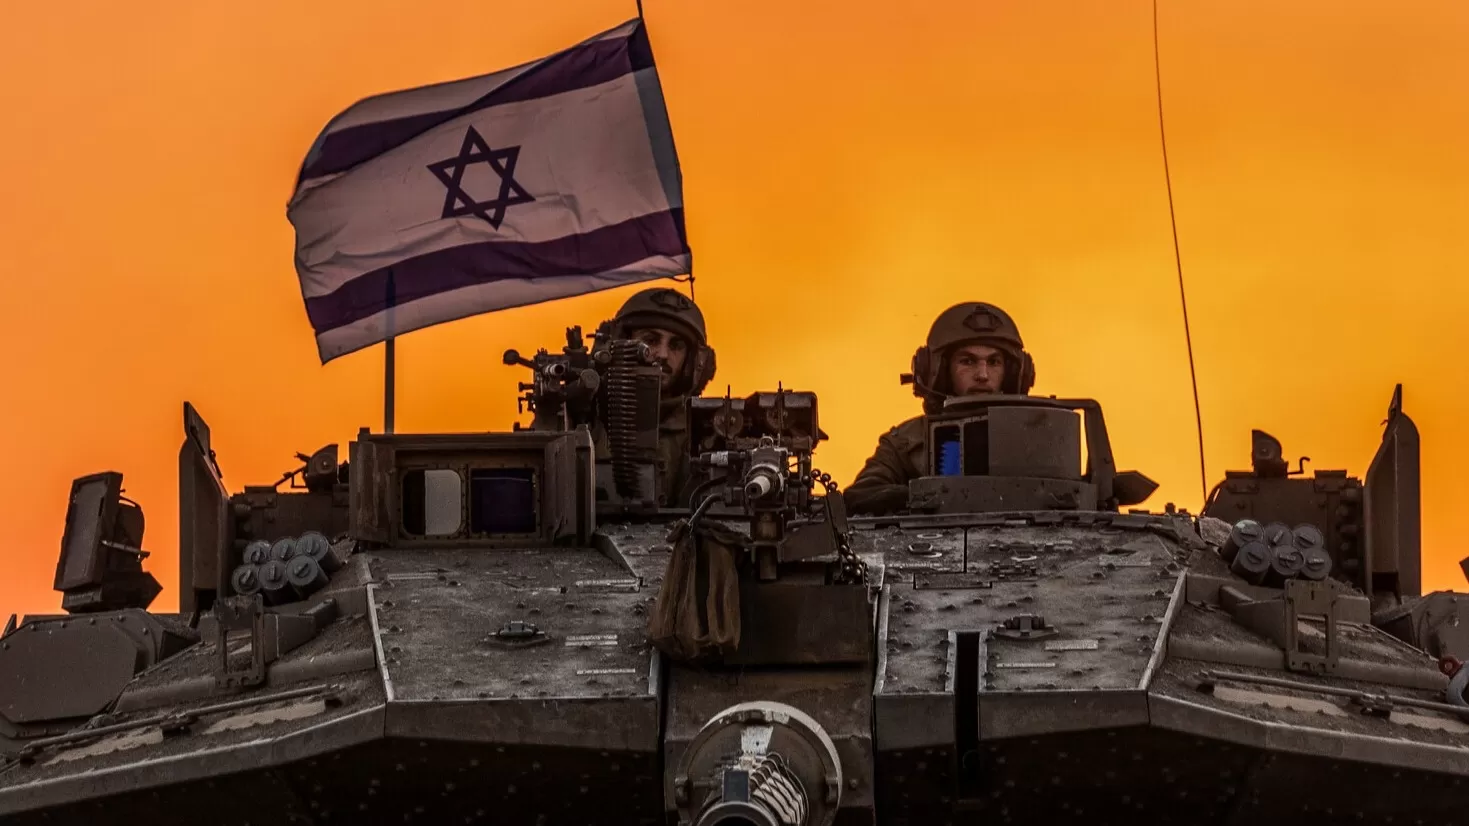 Իսրայելական բանակը հայտարարել է, որ պատերազմի հաջորդ փուլը կարող է տարբերվել սպասելիքներից